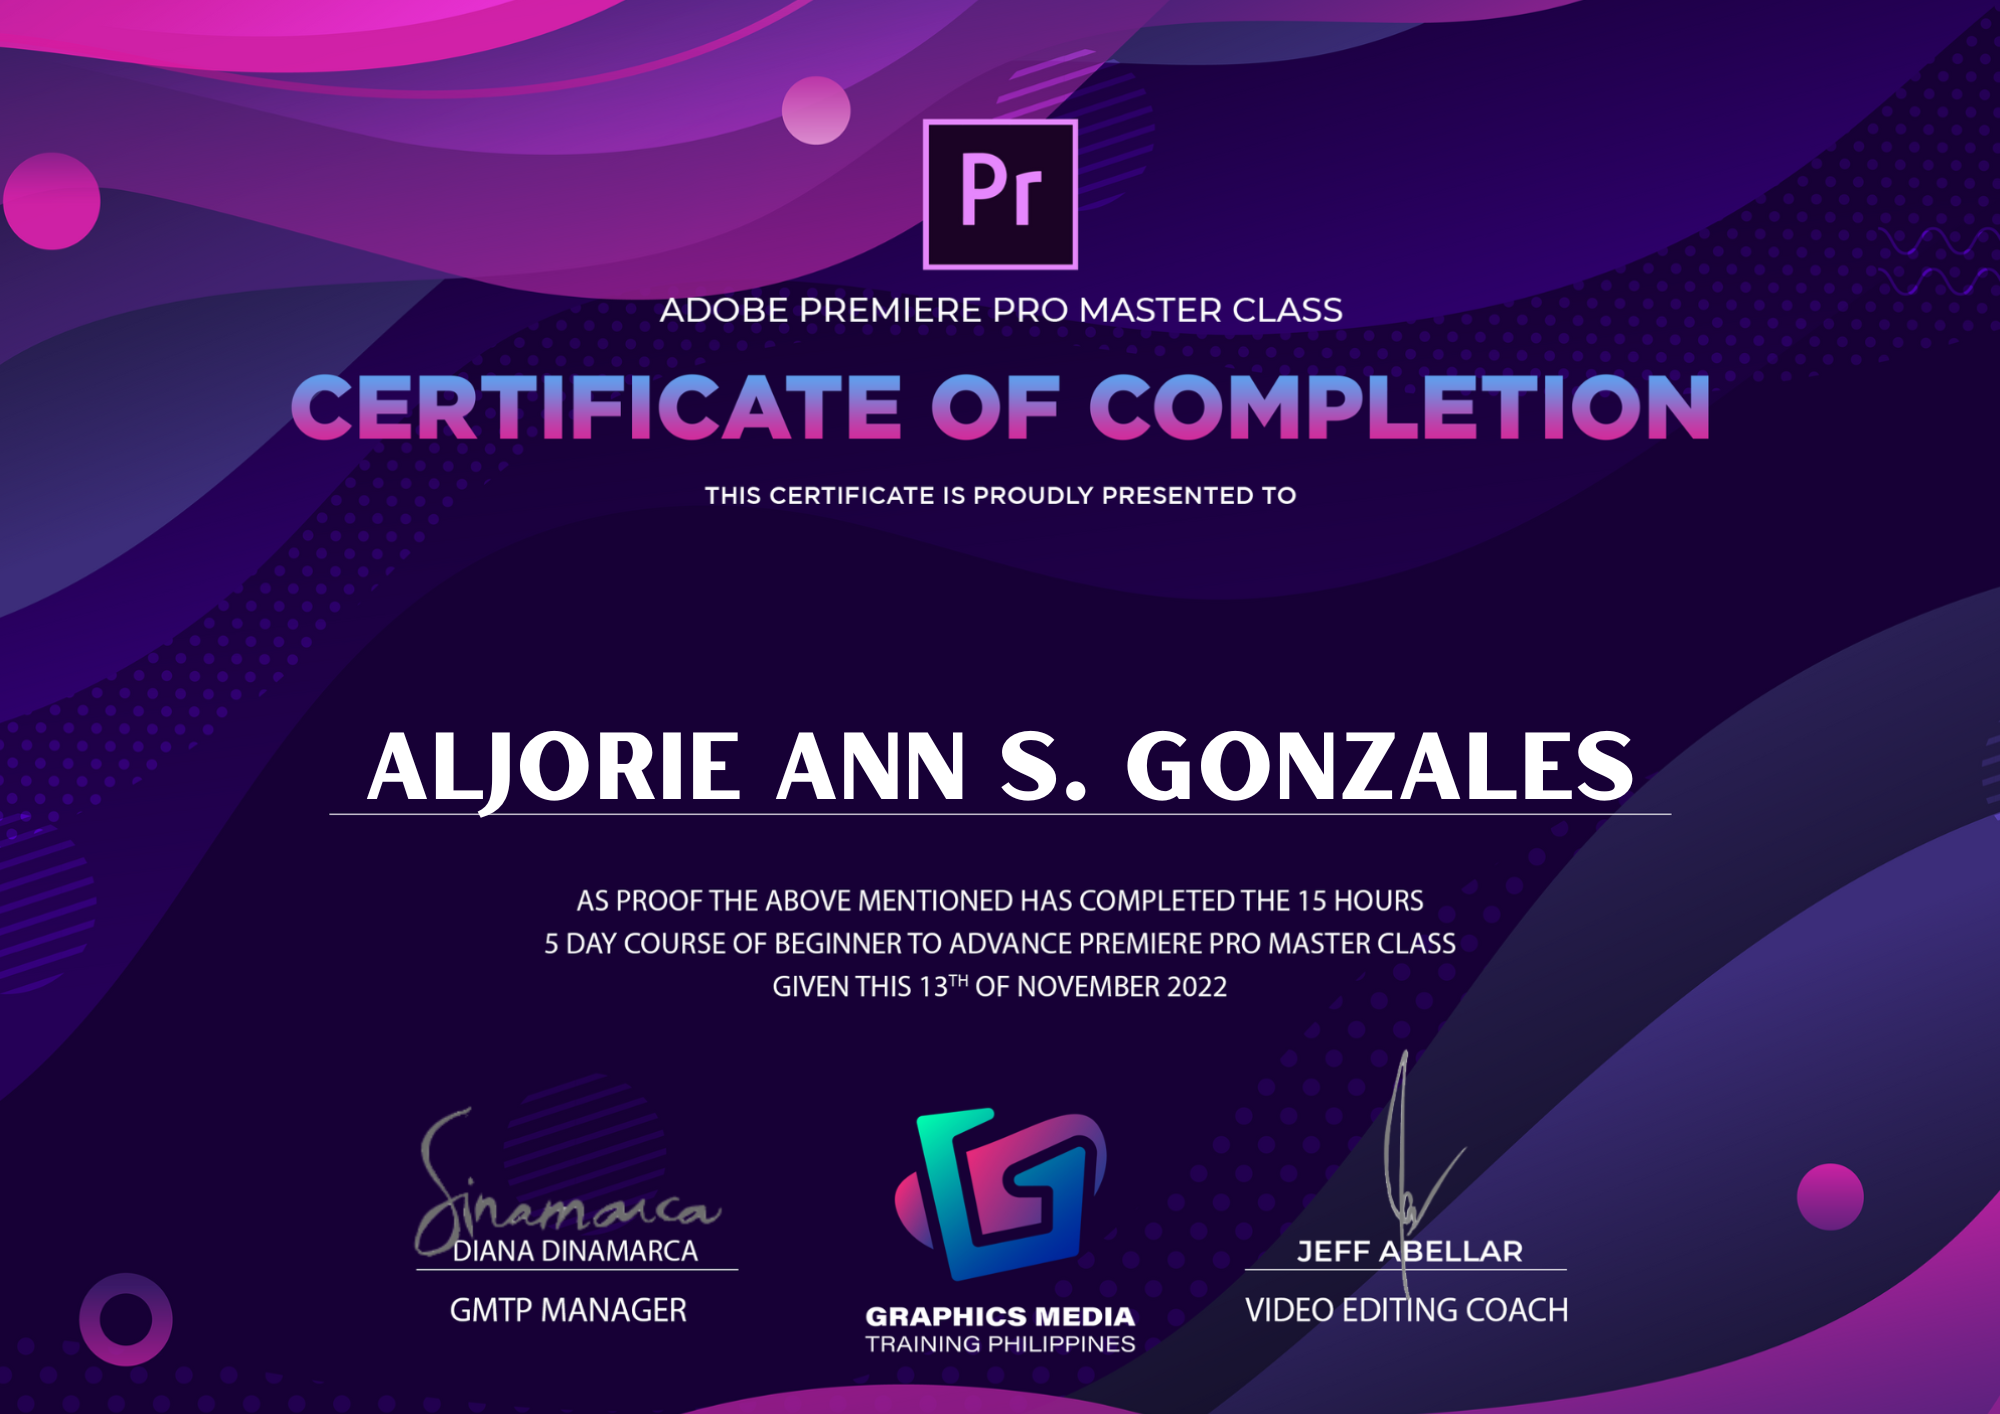 Adobe Premiere Pro Master Class Level I